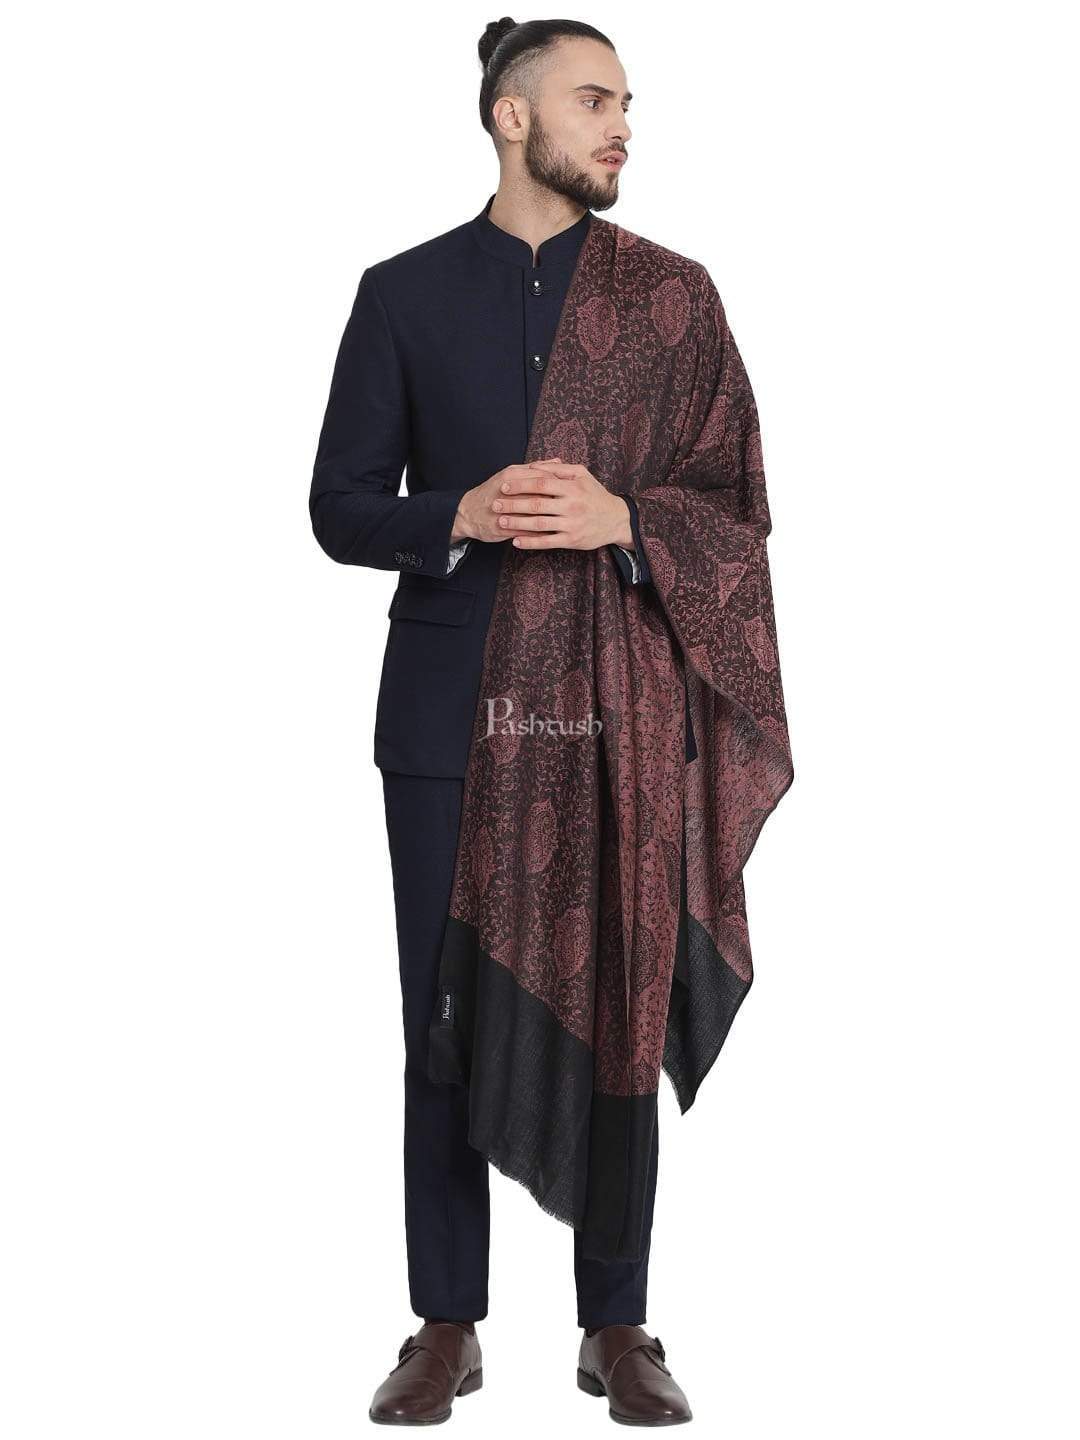 Pashtush India 70x200 Pashtush Mens Soft Wool, Reversible Stole Scarf